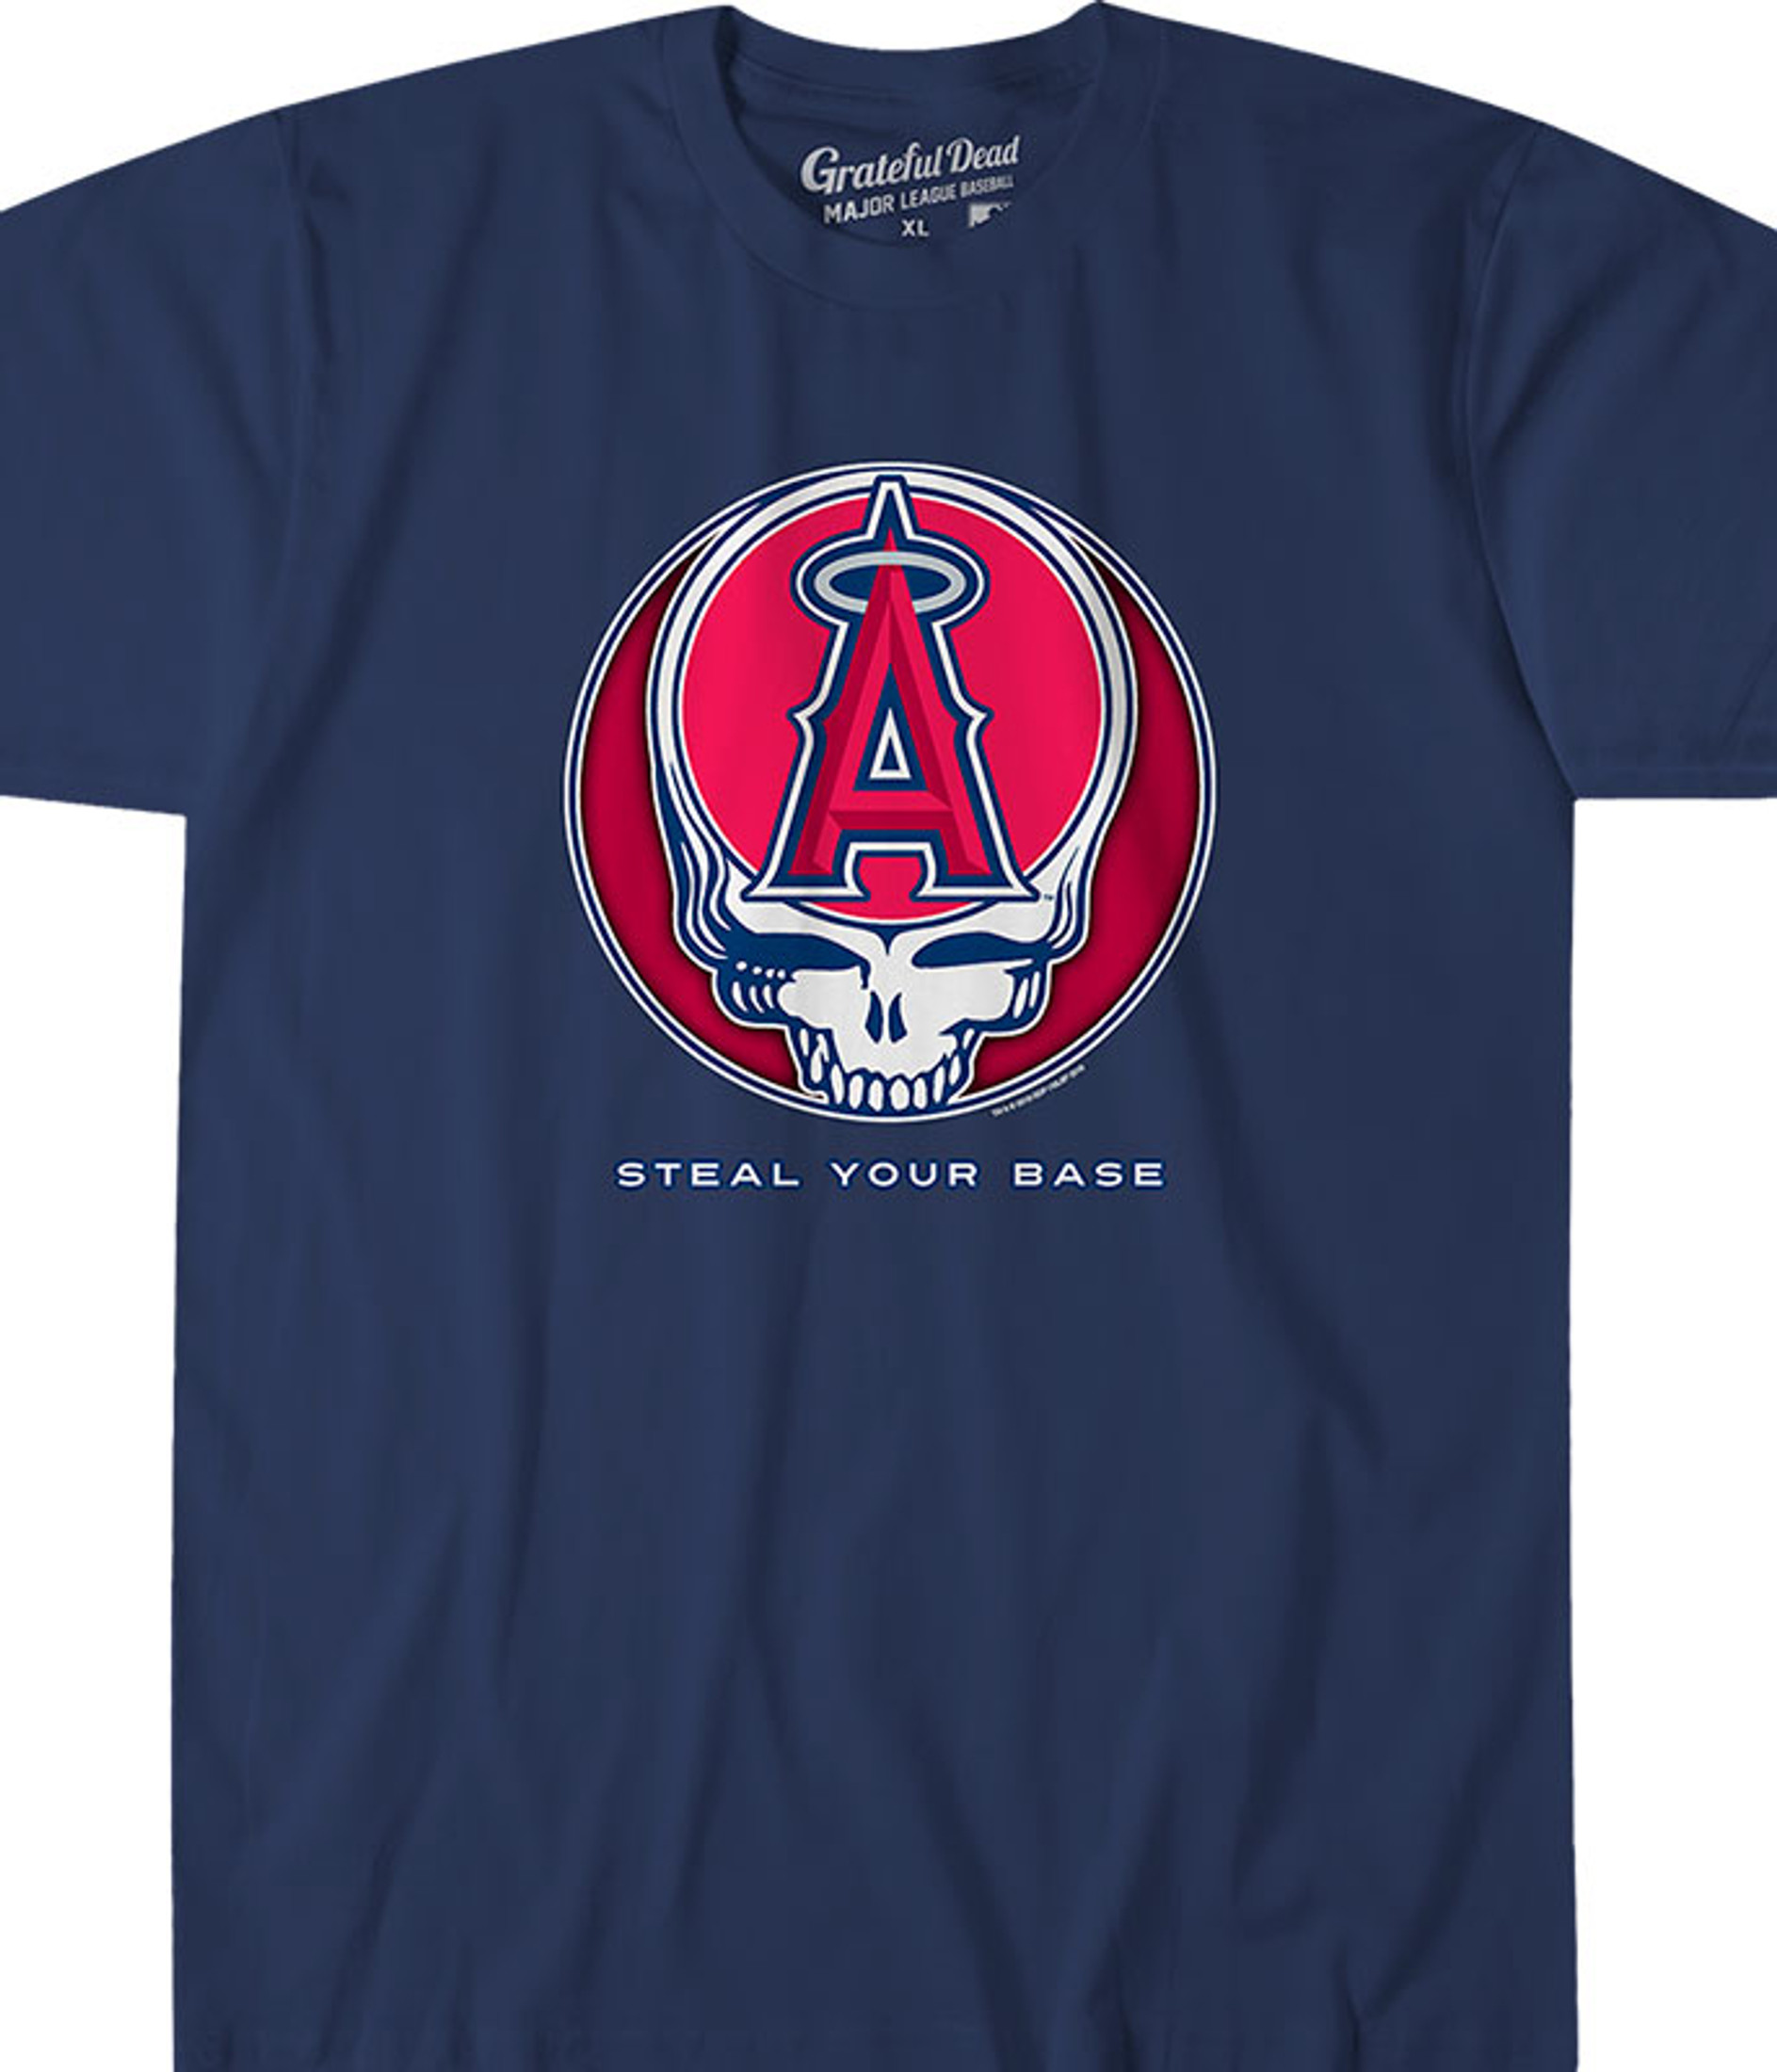 MLB T-Shirt - Los Angeles Angels, XL